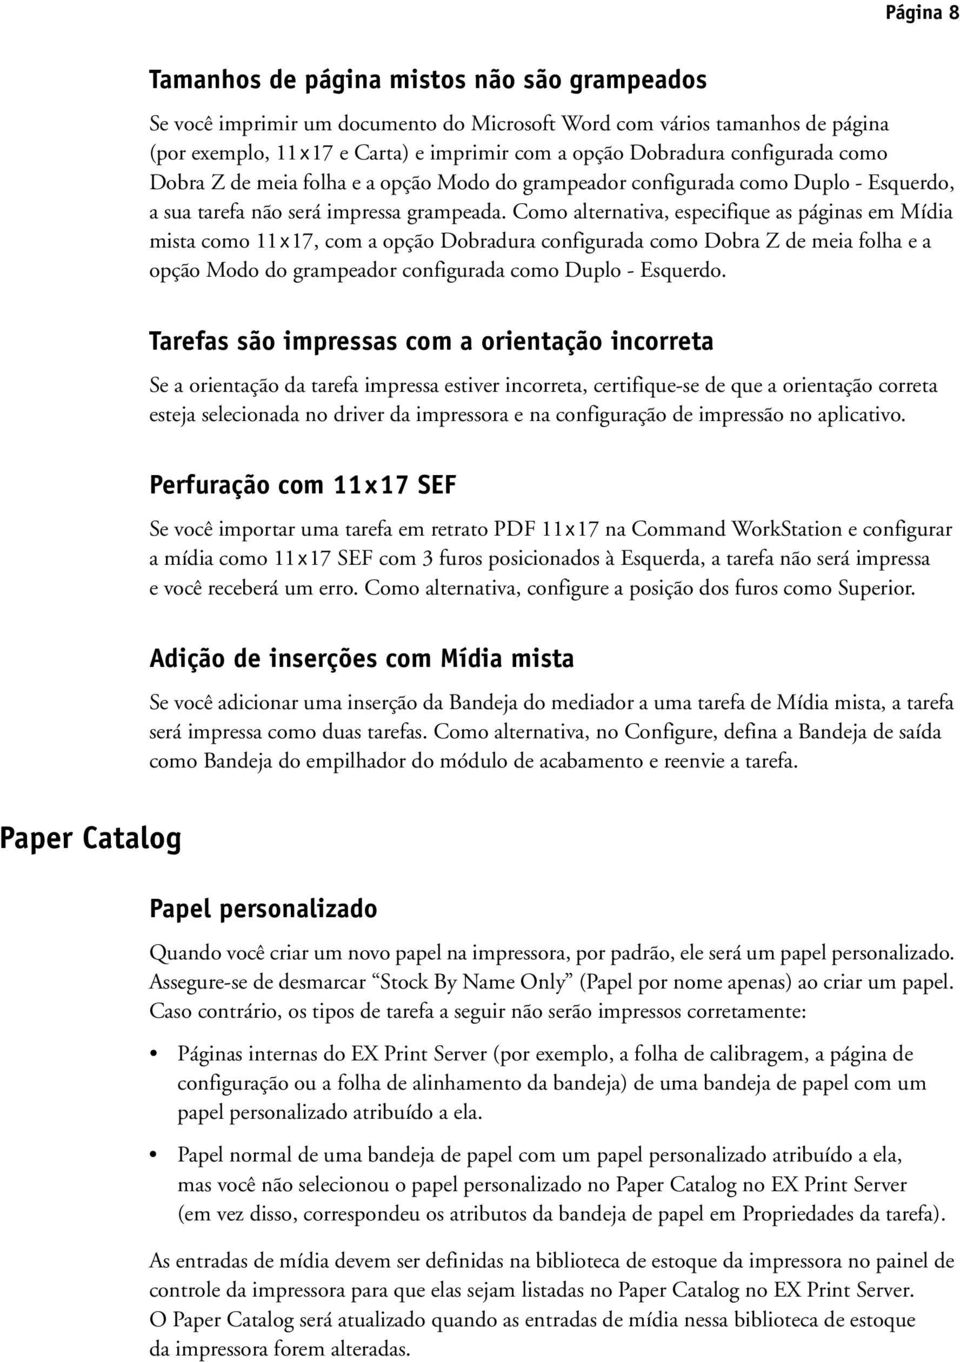 Como alternativa, especifique as páginas em Mídia mista como 11 x 17, com a opção Dobradura configurada como Dobra Z de meia folha e a opção Modo do grampeador configurada como Duplo - Esquerdo.